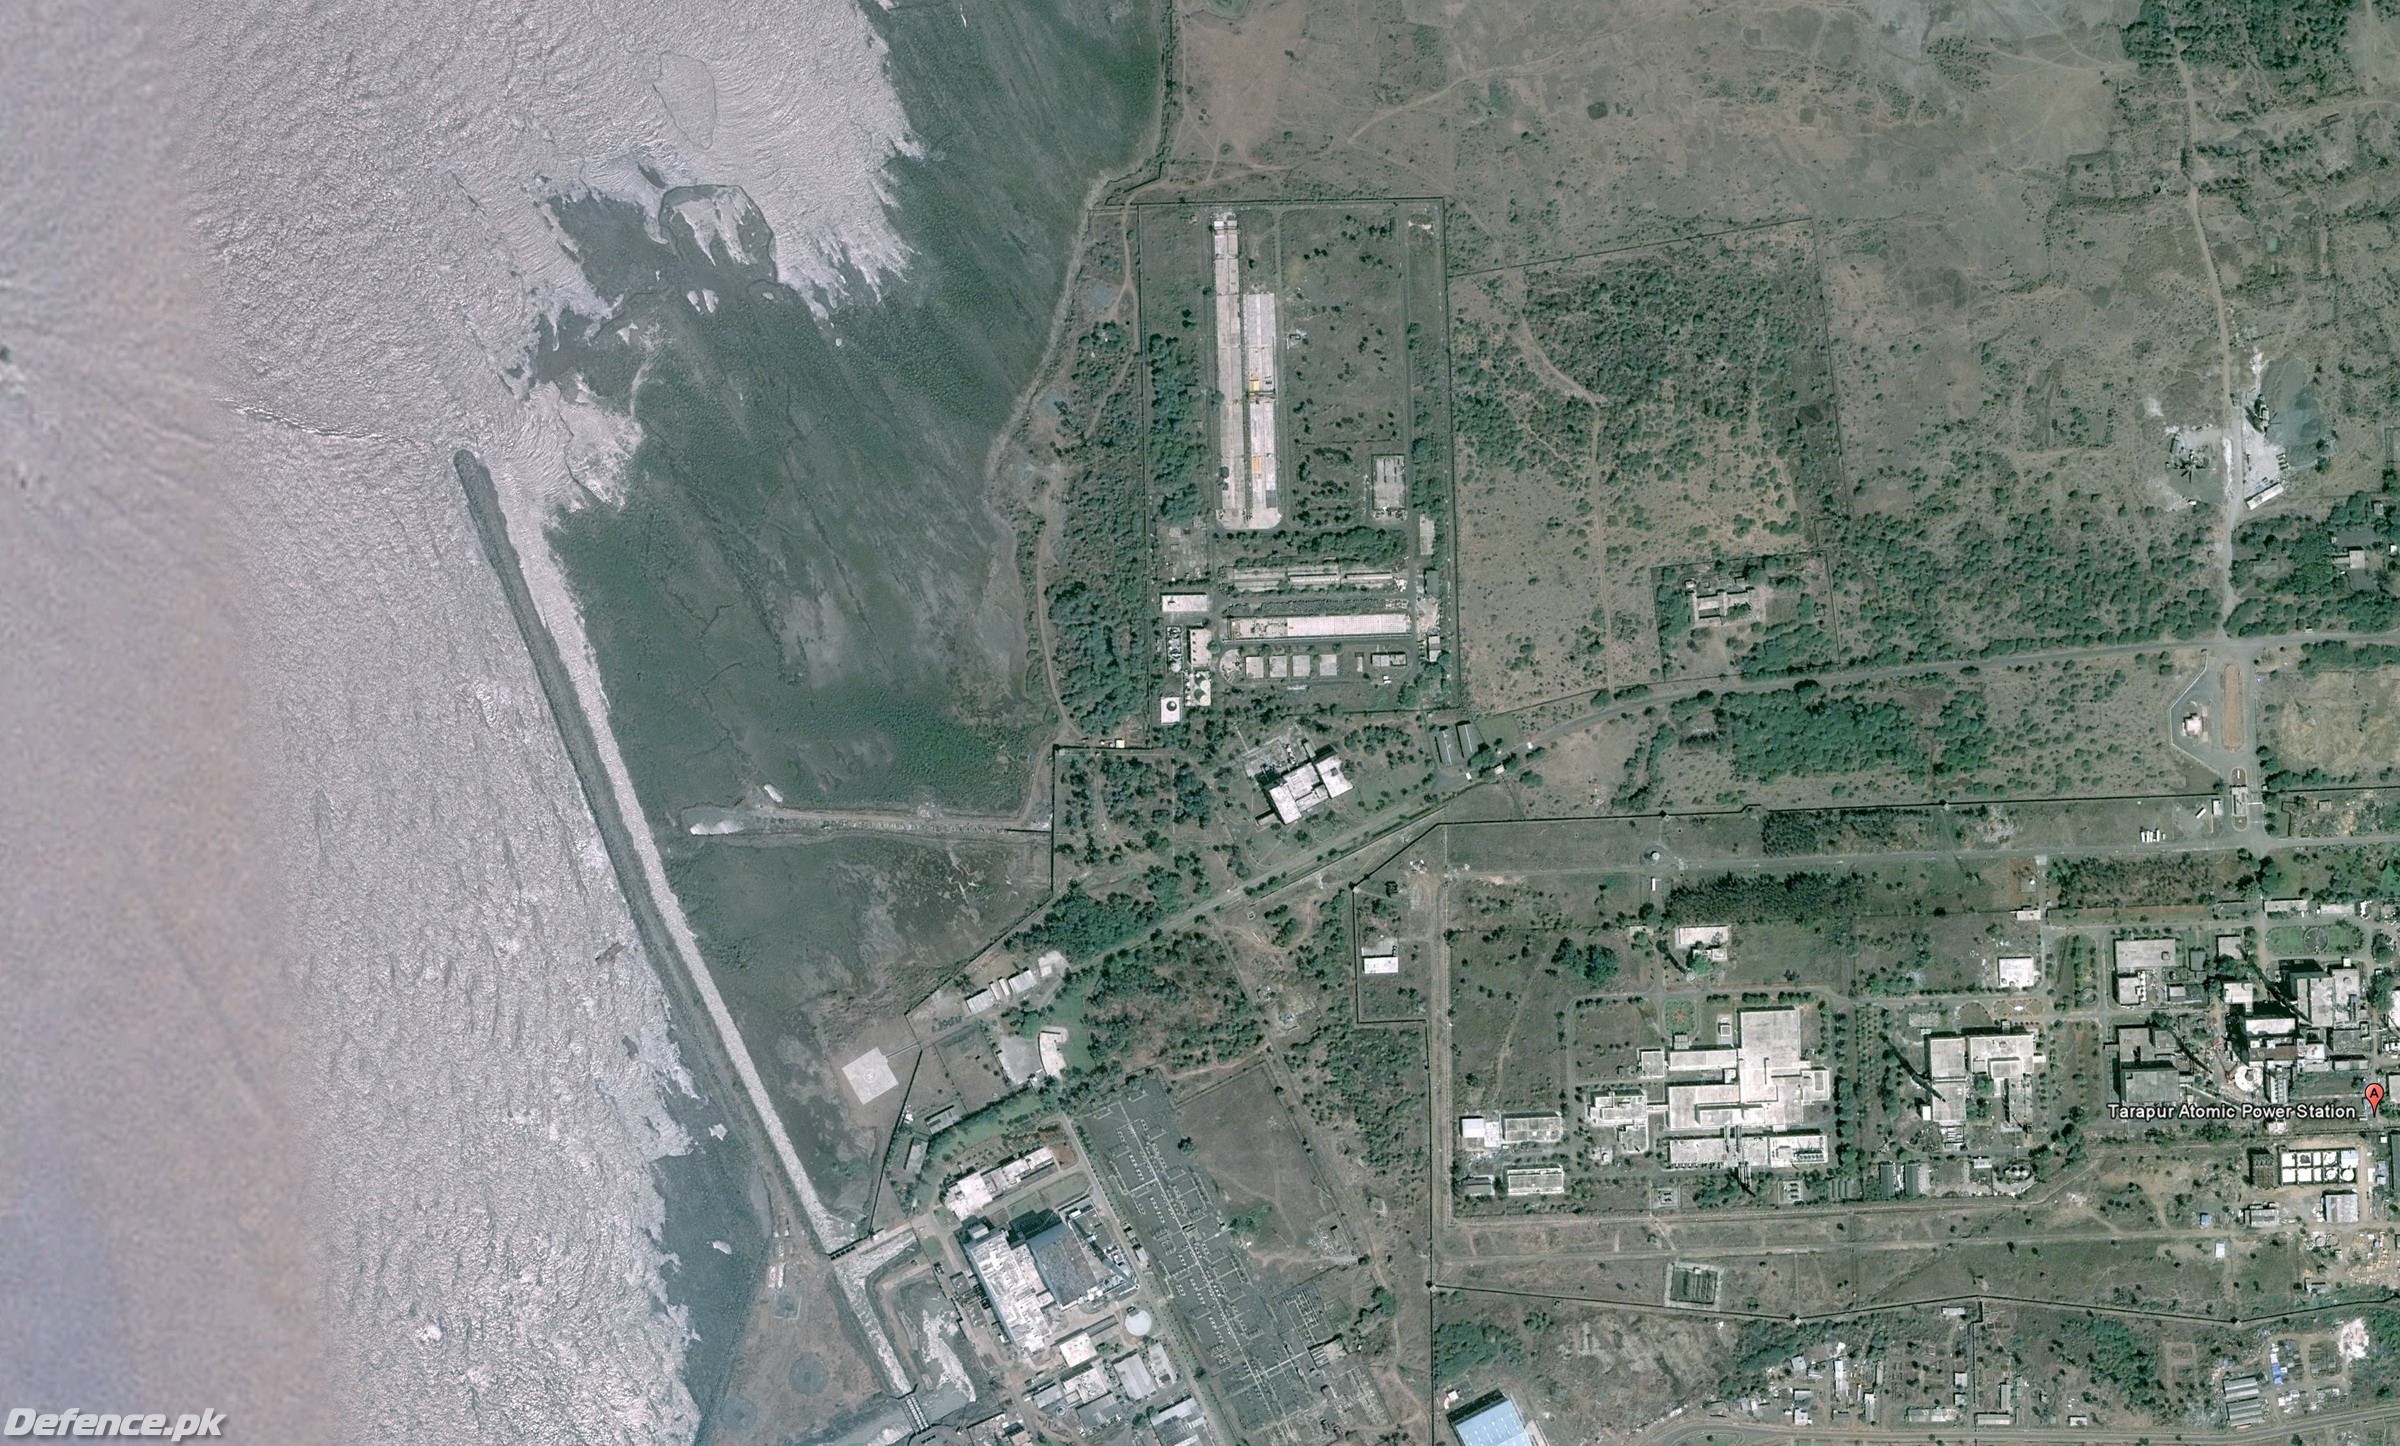 Tarapur Atomic Power Station 2